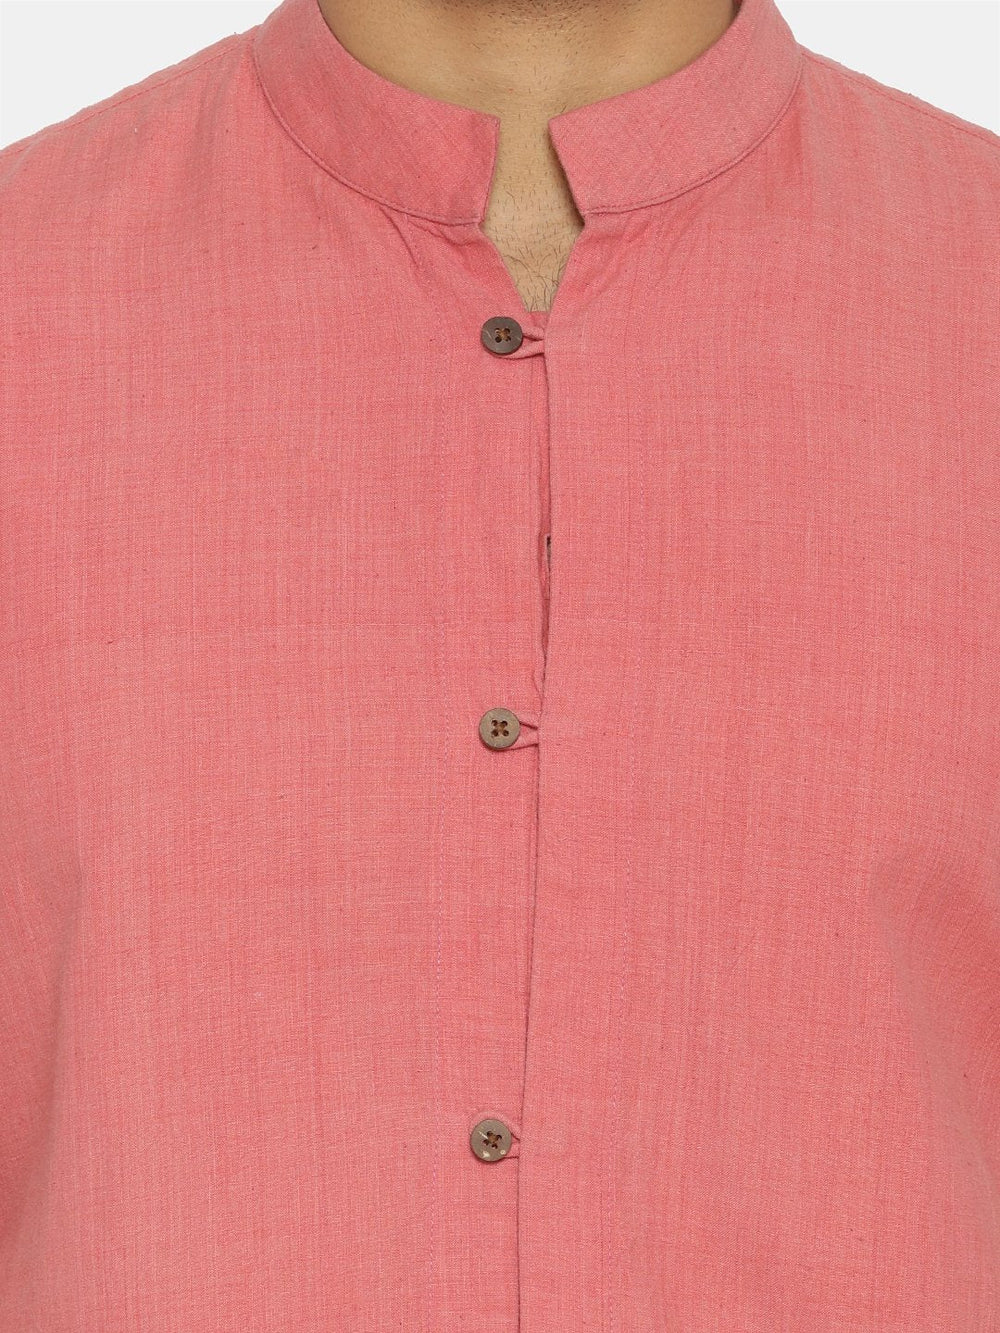 Flamingo pink mandarin collar shirt